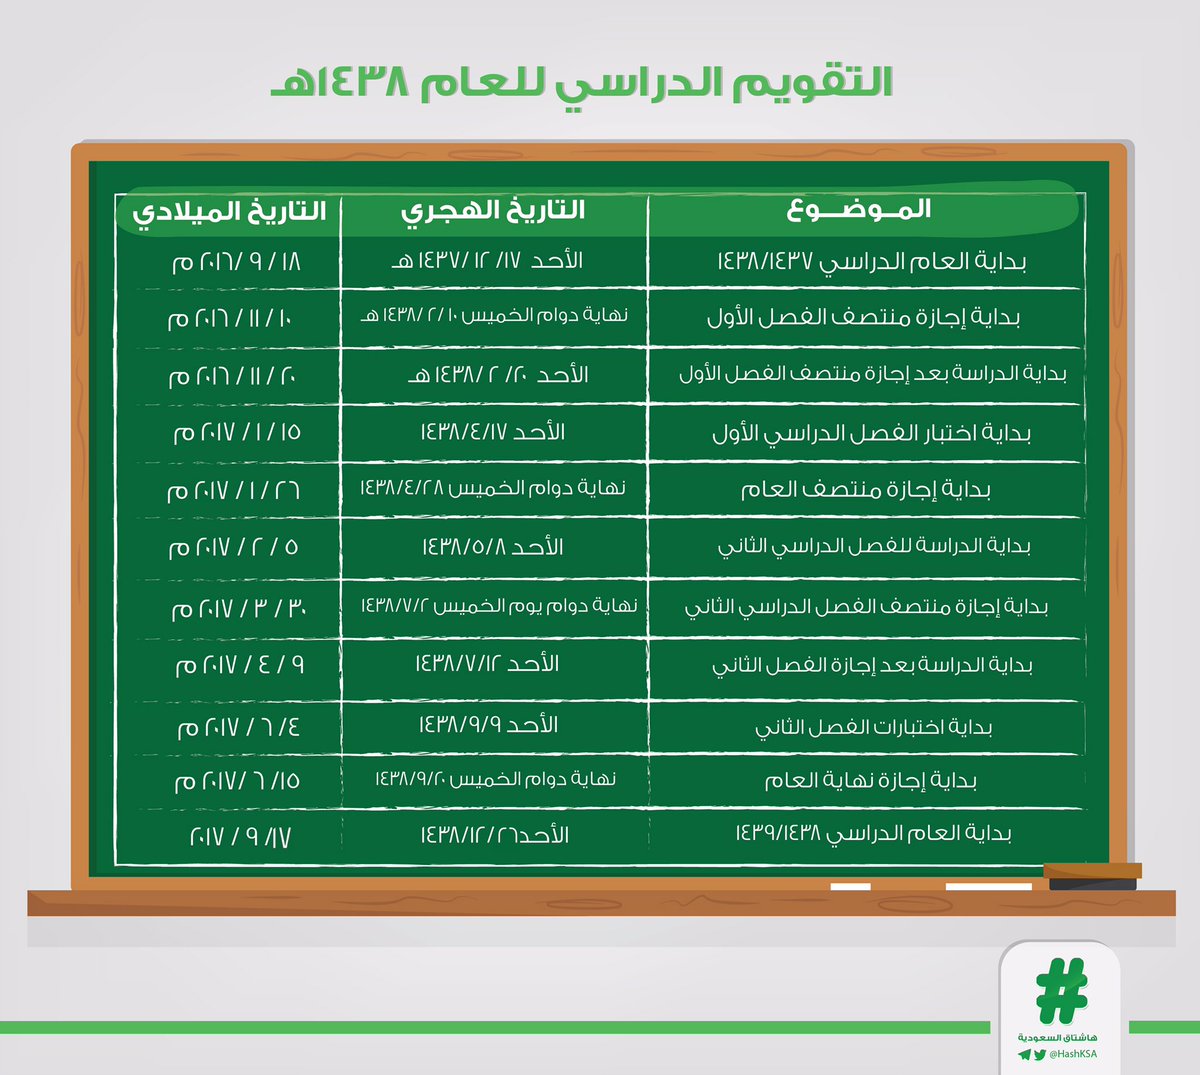 هاشتاق السعودية Twitterissa غد ا استئناف الدراسة والربع الأخير من السنة الدراسية 1437 1438